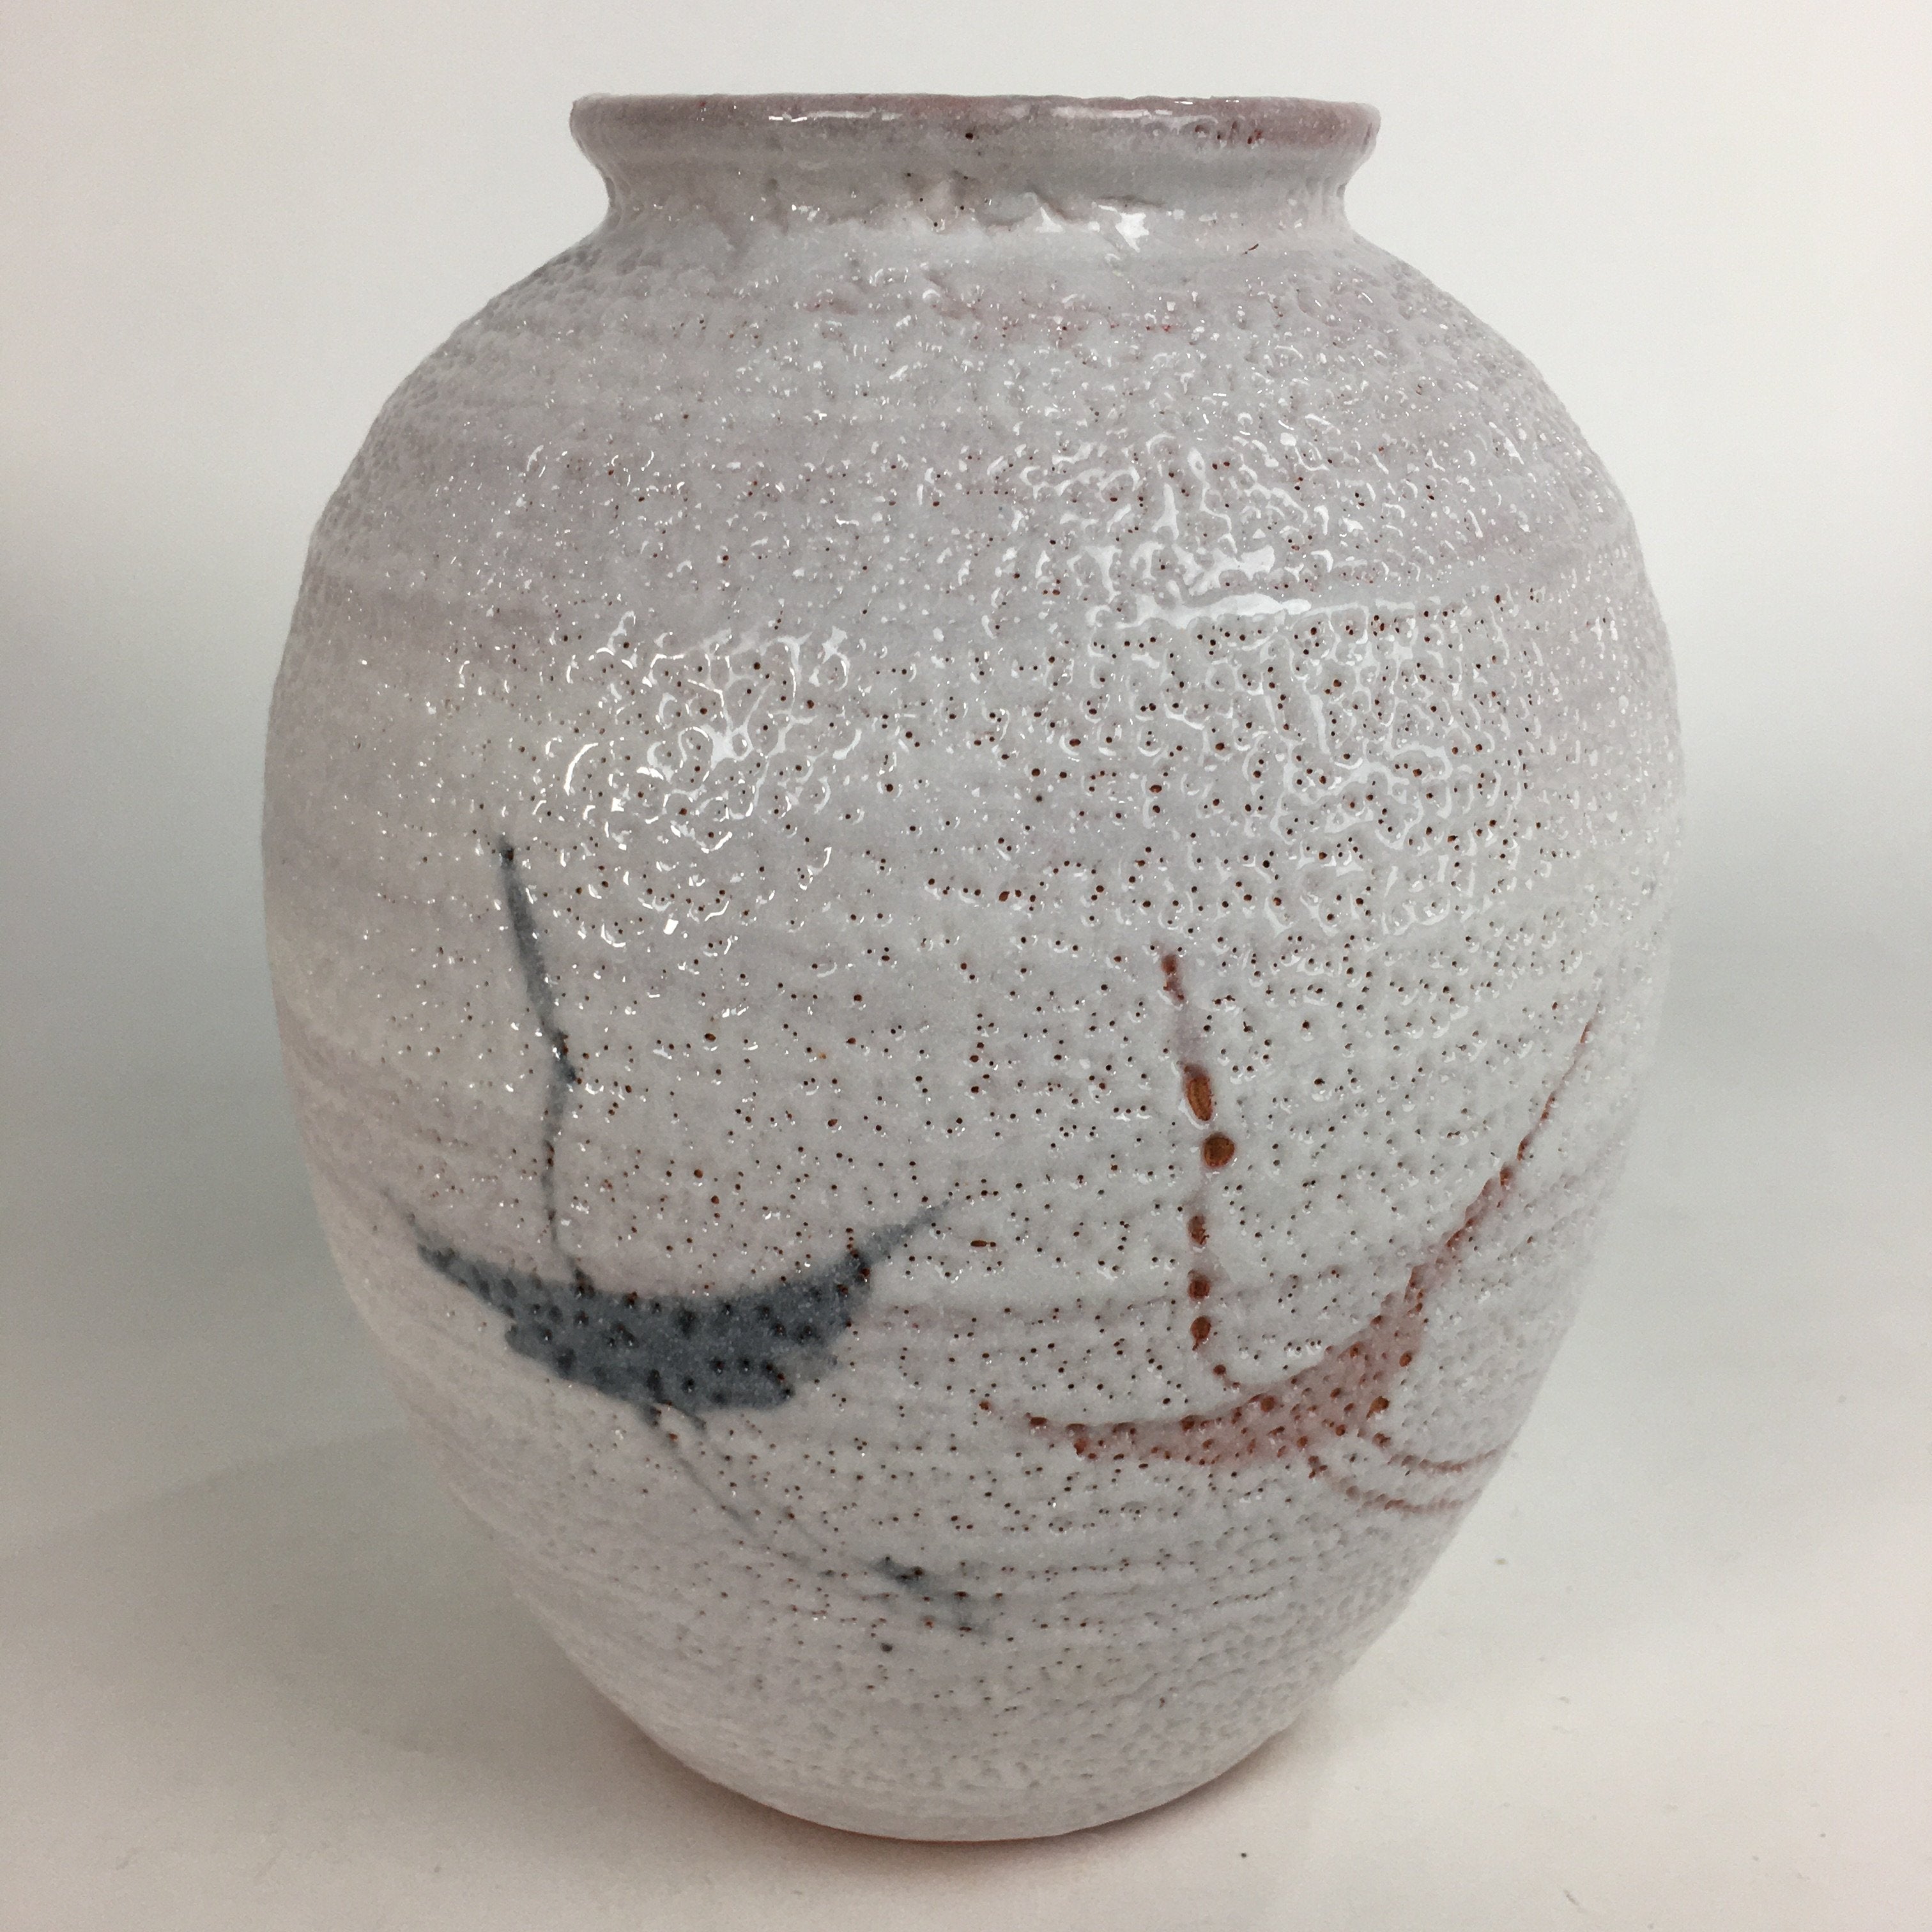 Japanese Ceramic Flower Vase Kabin Mino ware Vtg Pottery White Ikebana FV927